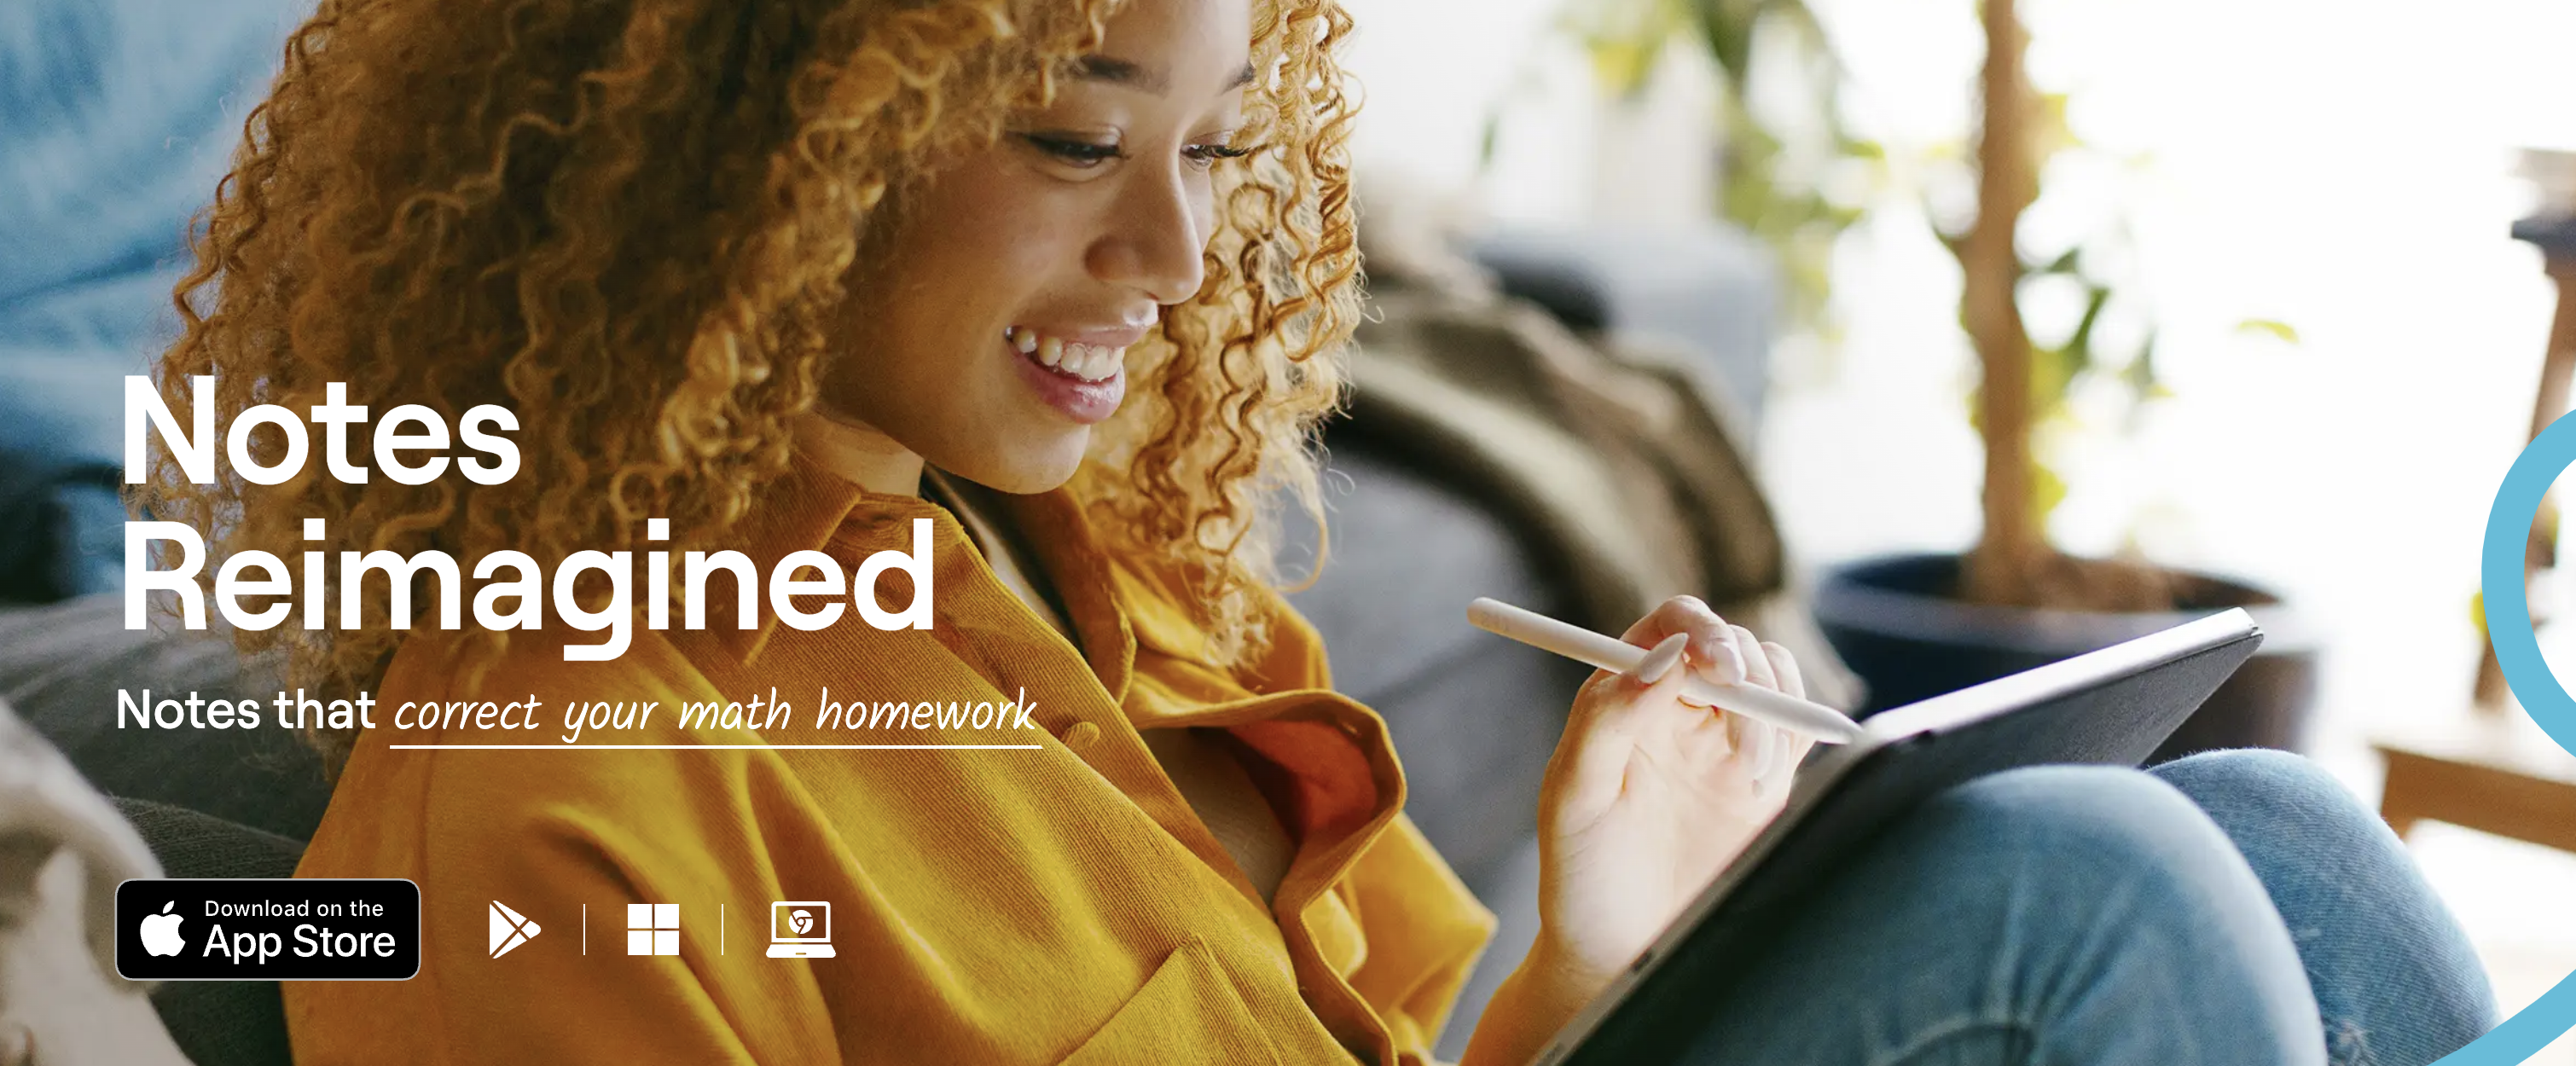 Gambar pemasaran Goodnotes yang menampilkan seorang perempuan sedang menggunakan produk di iPad.